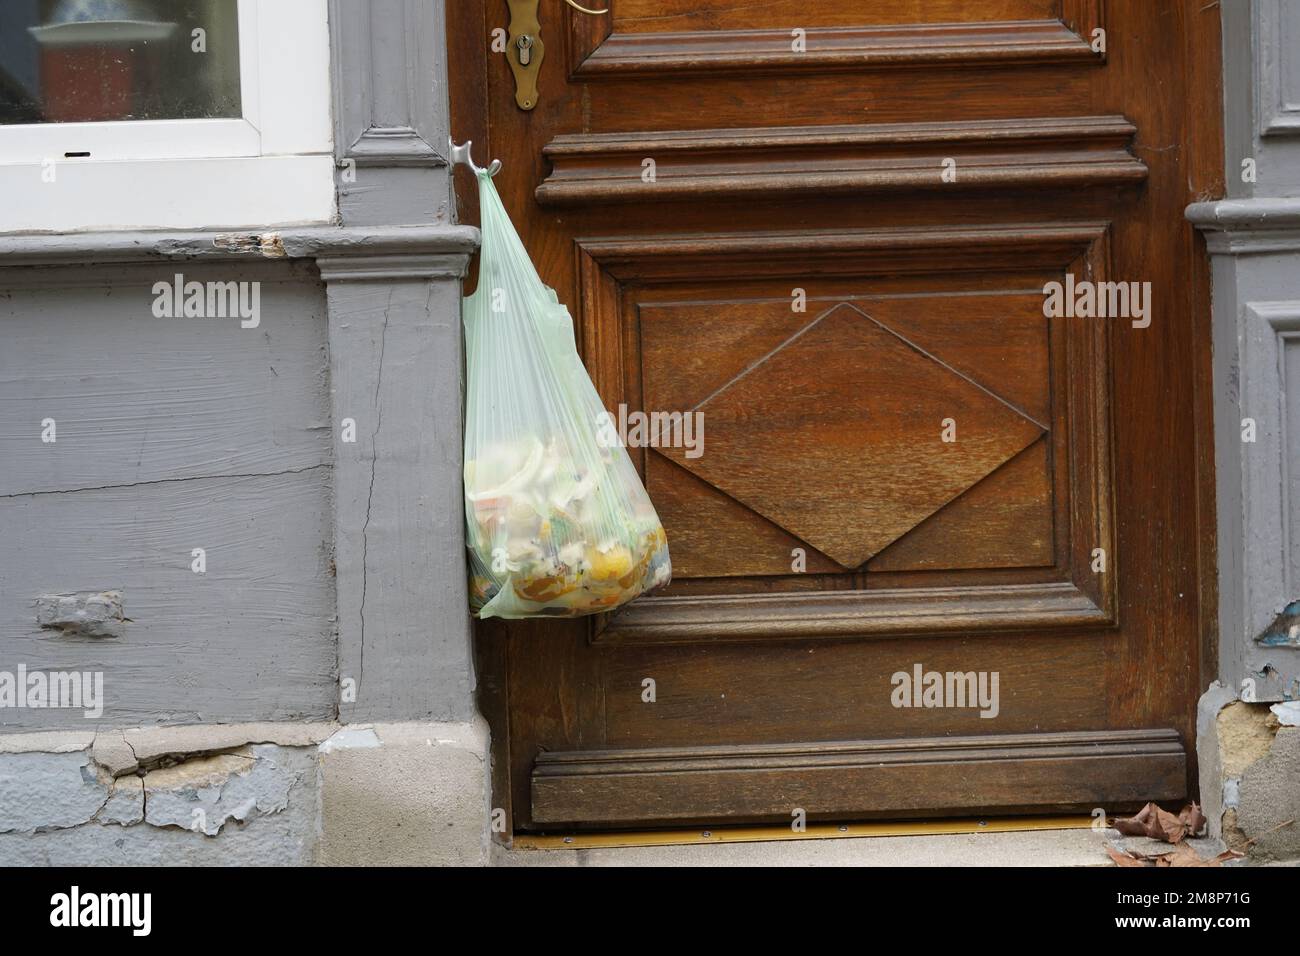 Organischer Abfall in einer Plastiktüte, der an einem Türknauf einer Haustür hängt. Stockfoto